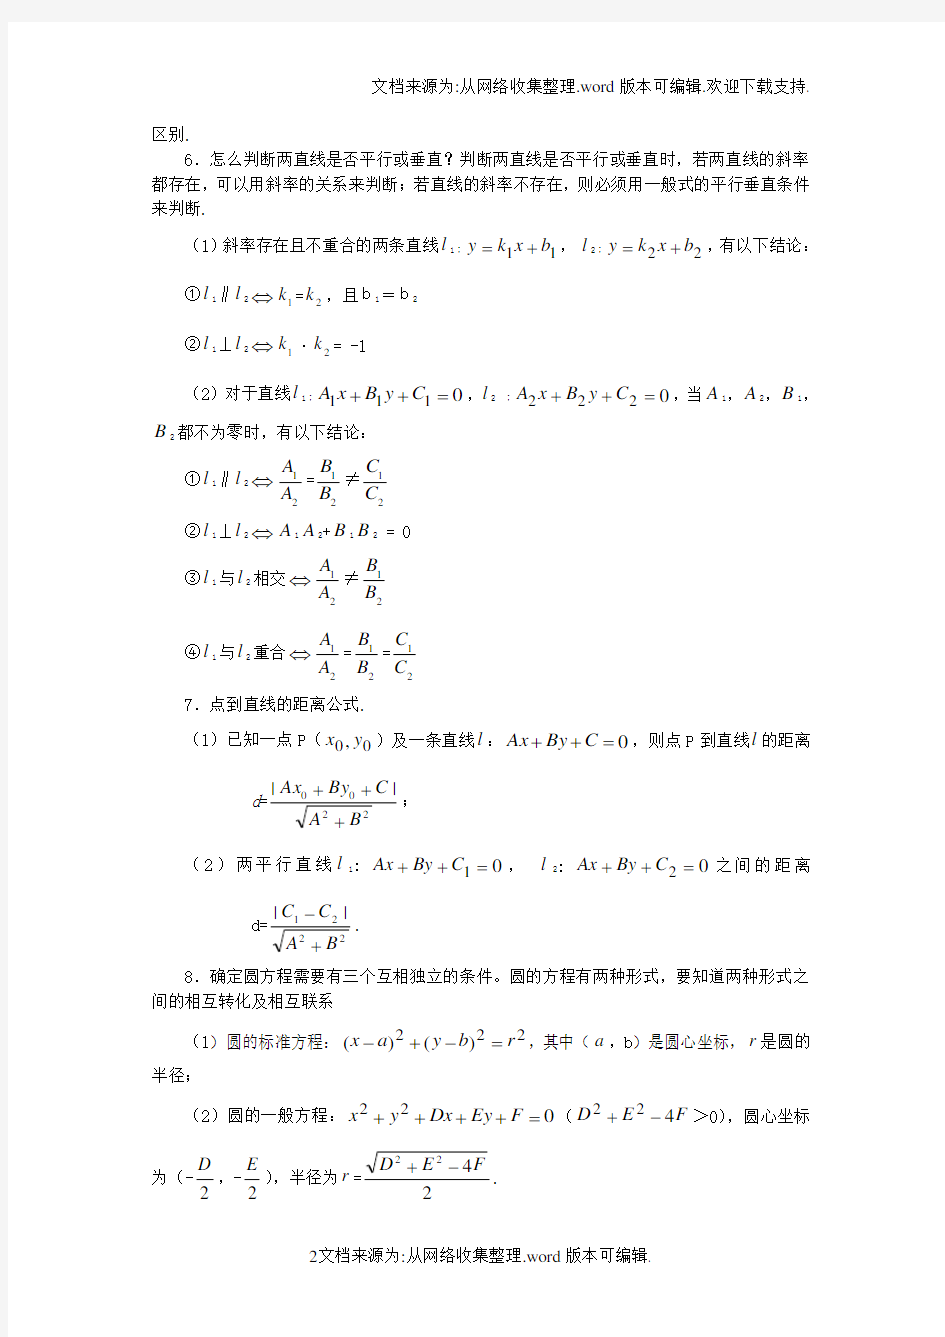 高中数学平面解析几何初步经典例题(供参考)